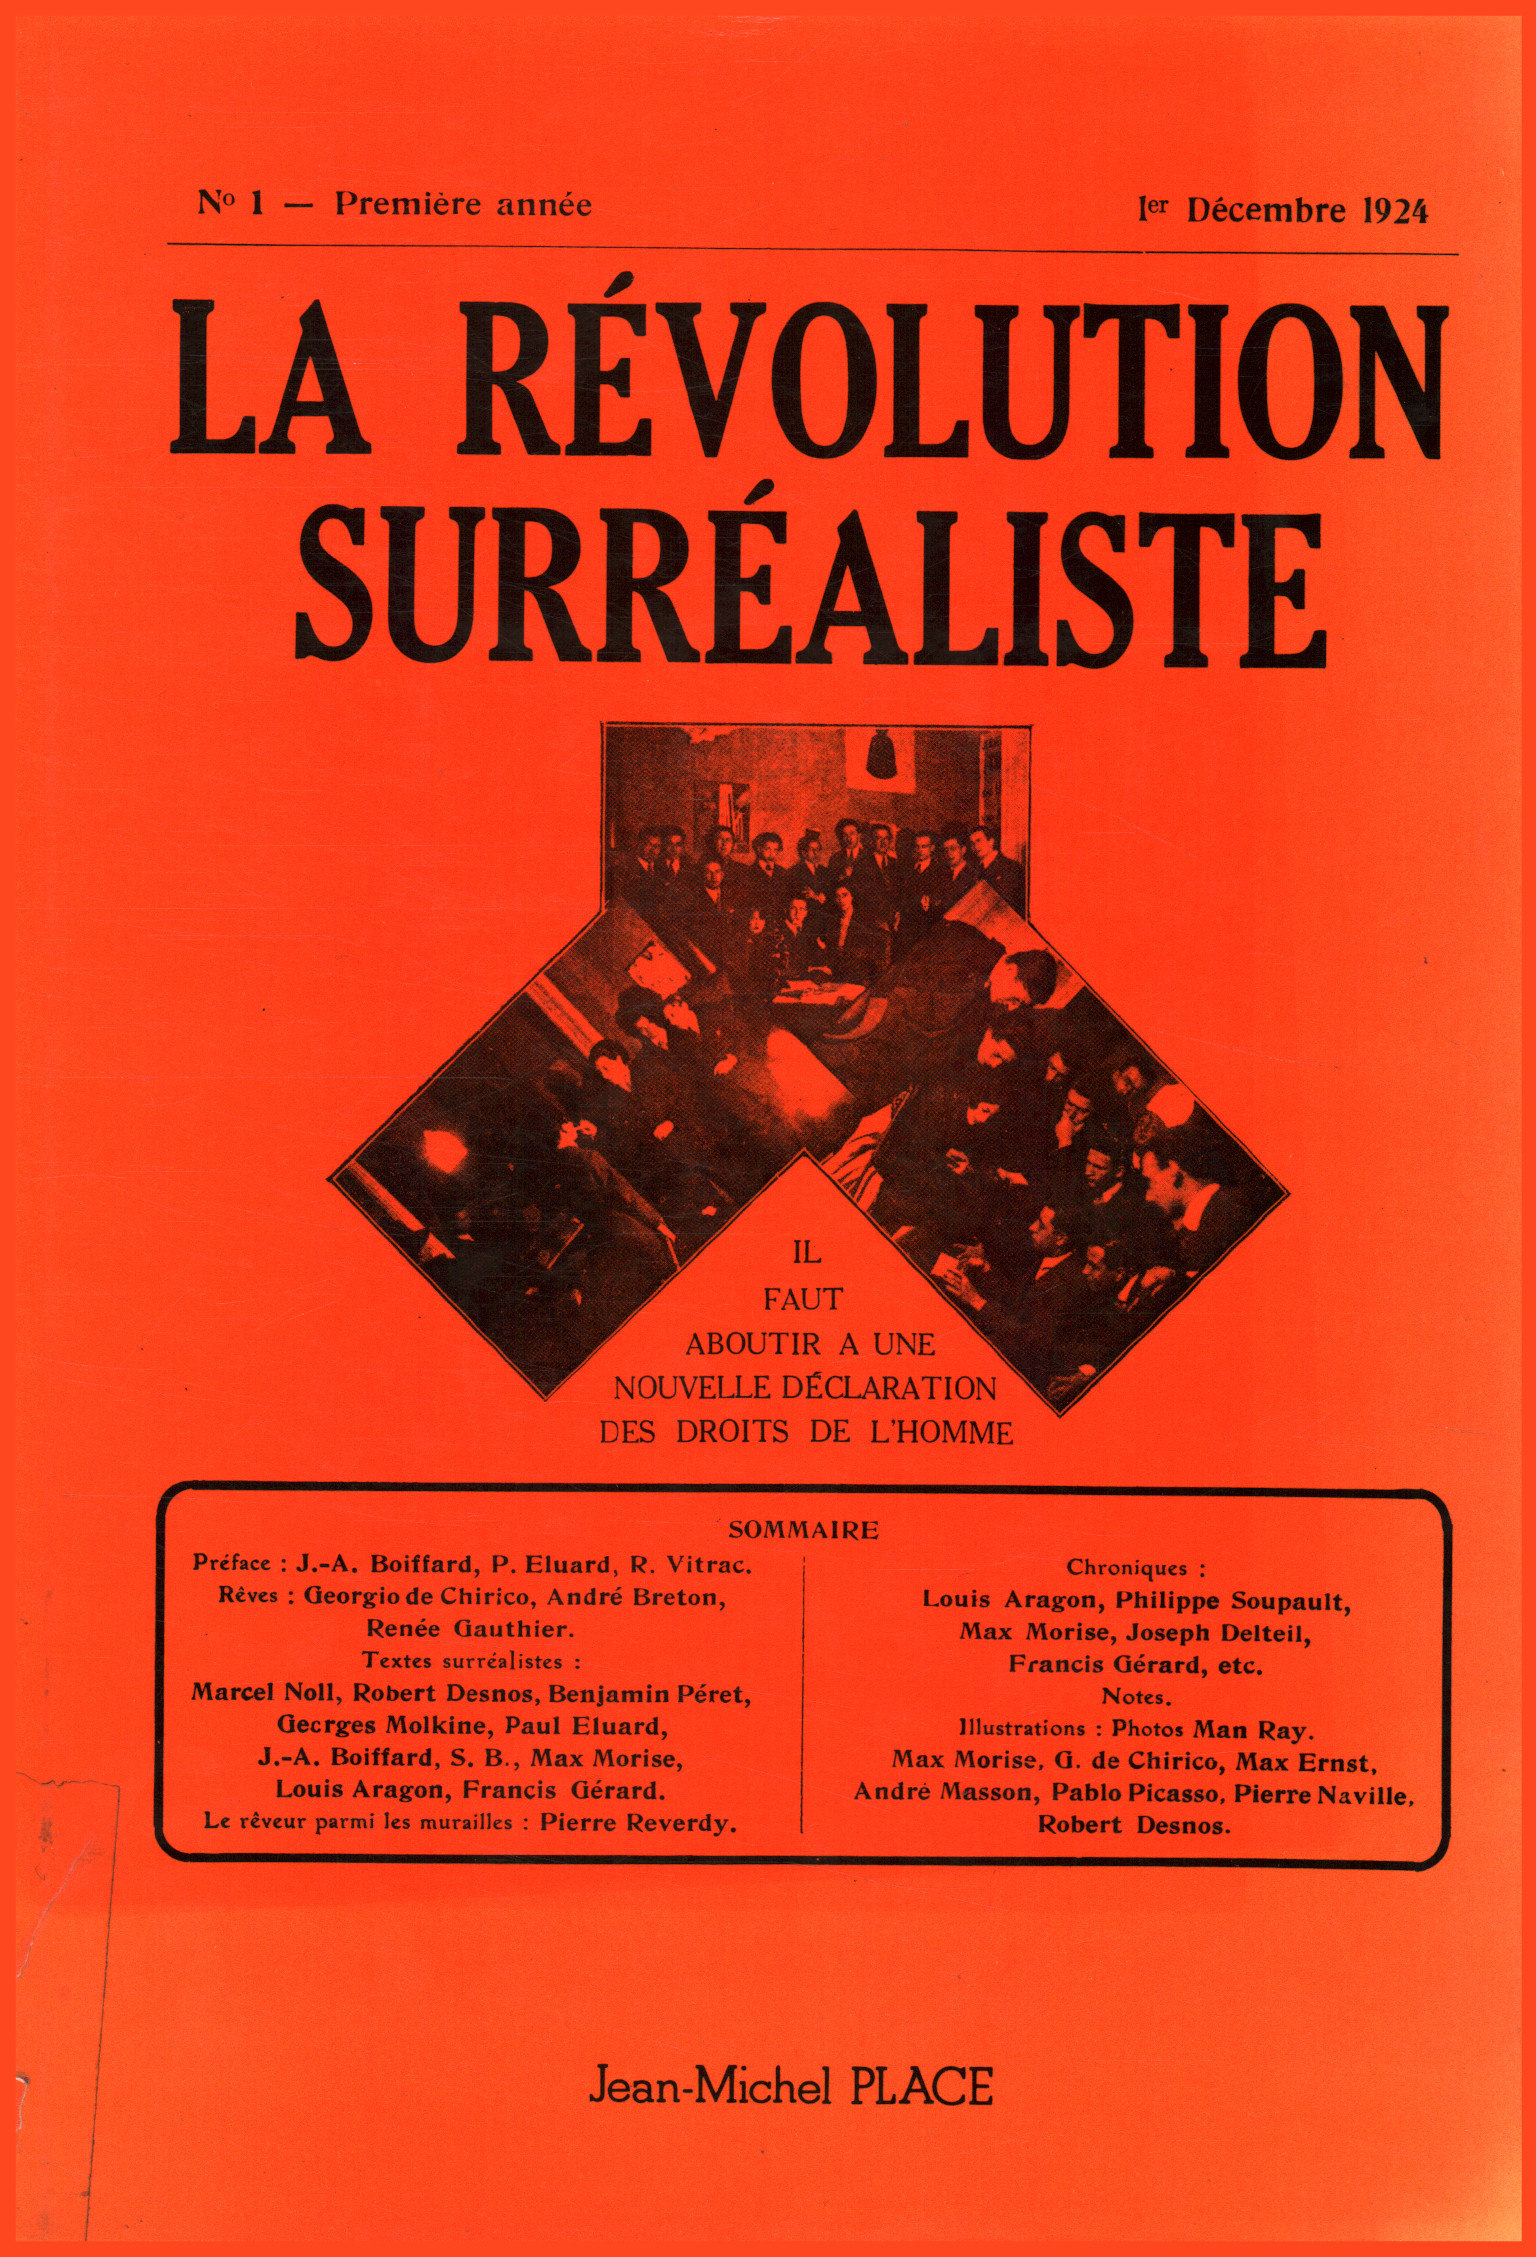 La Révolution surrealiste. Collection%2,La Révolution surrealiste. Collection%2,La Révolution surrealiste. Collection%2